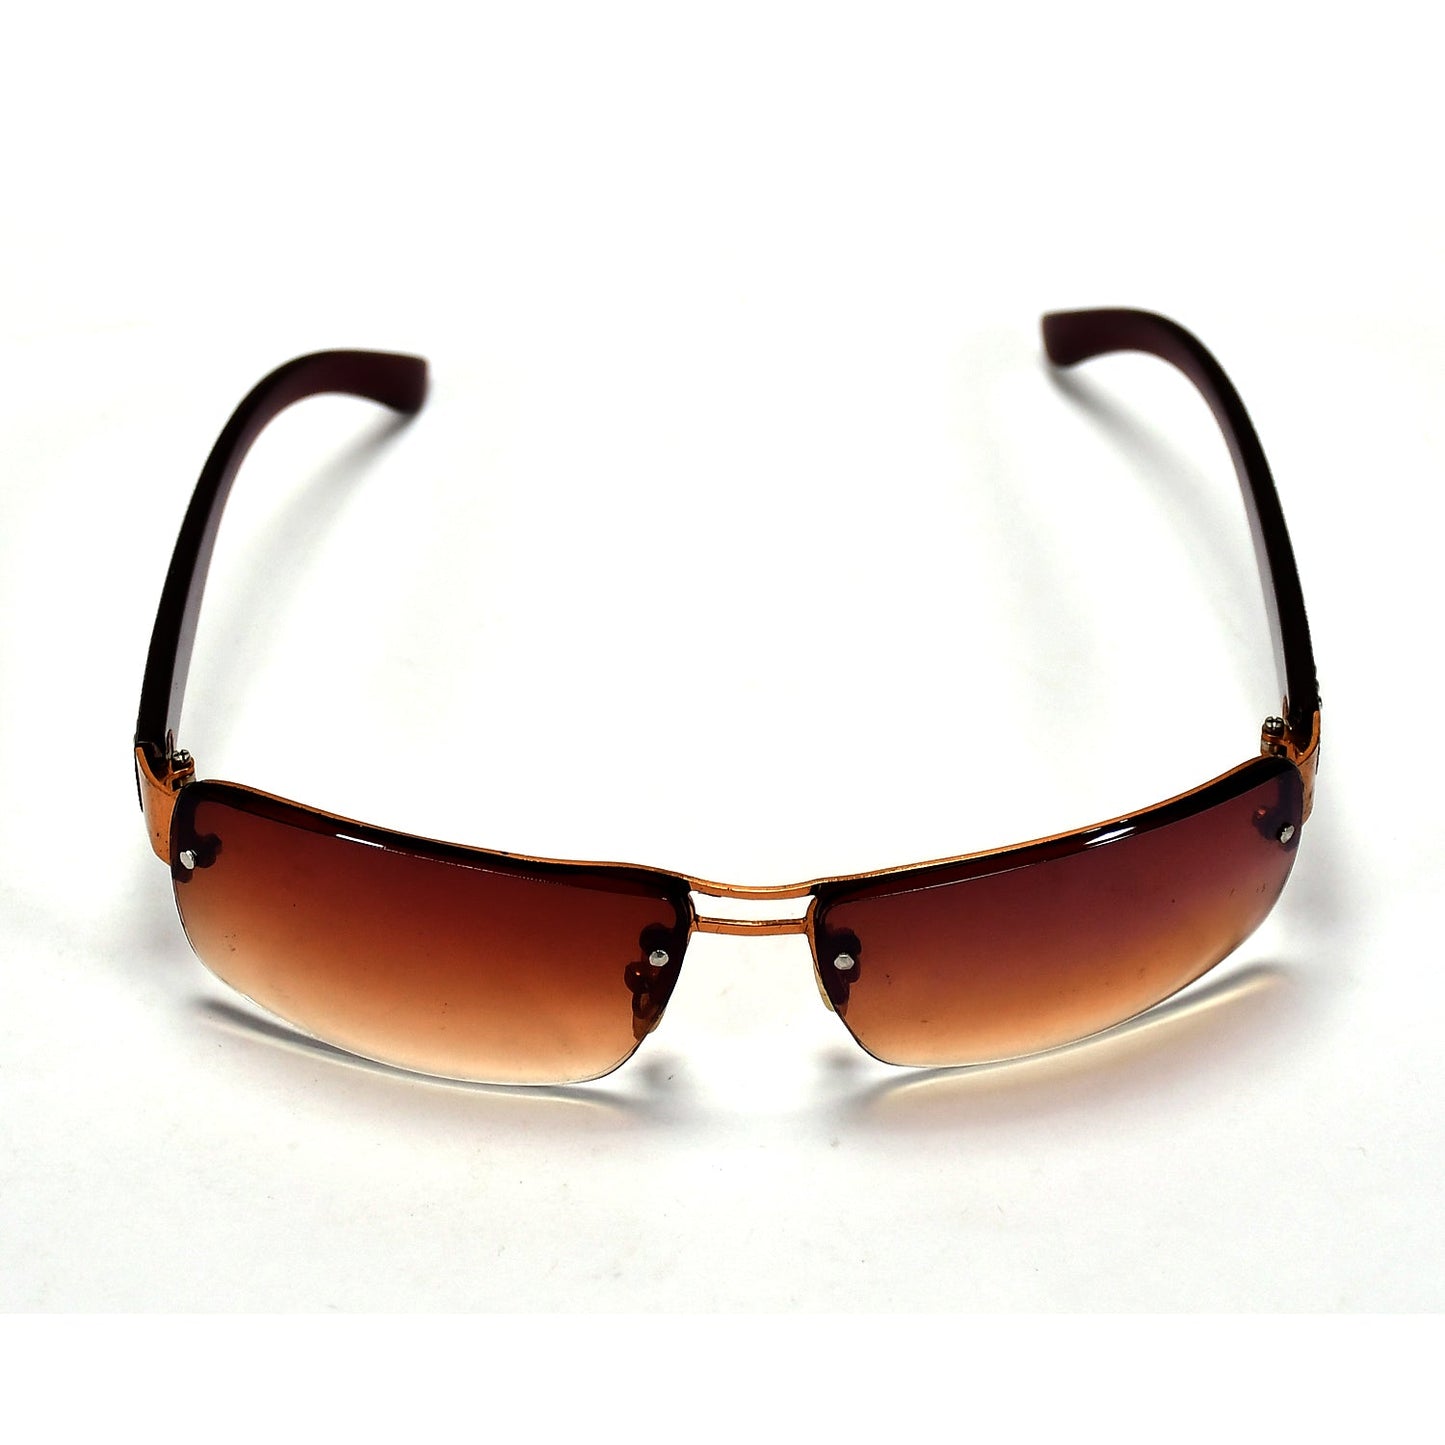 7657 Men Casual Sunglasses Flexible Design ( 1 pcs ) 